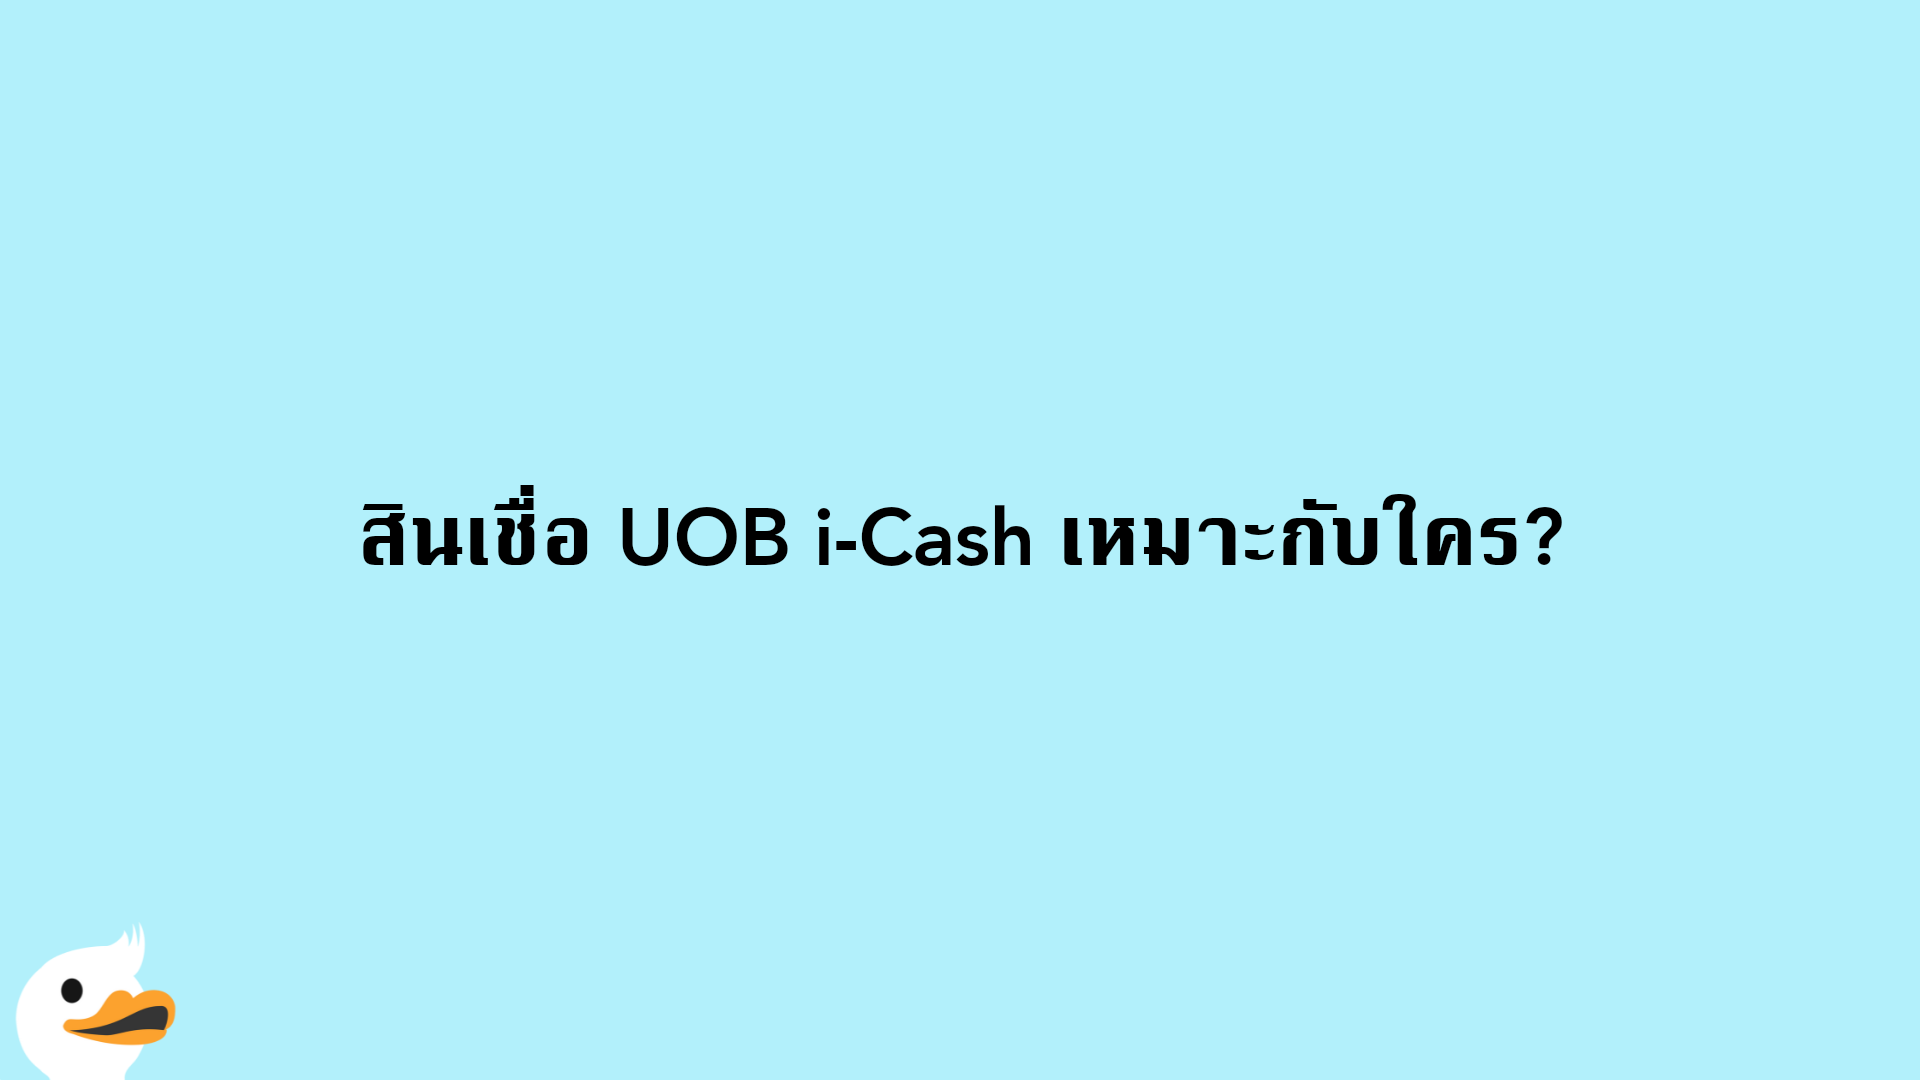 สินเชื่อ UOB i-Cash เหมาะกับใคร?